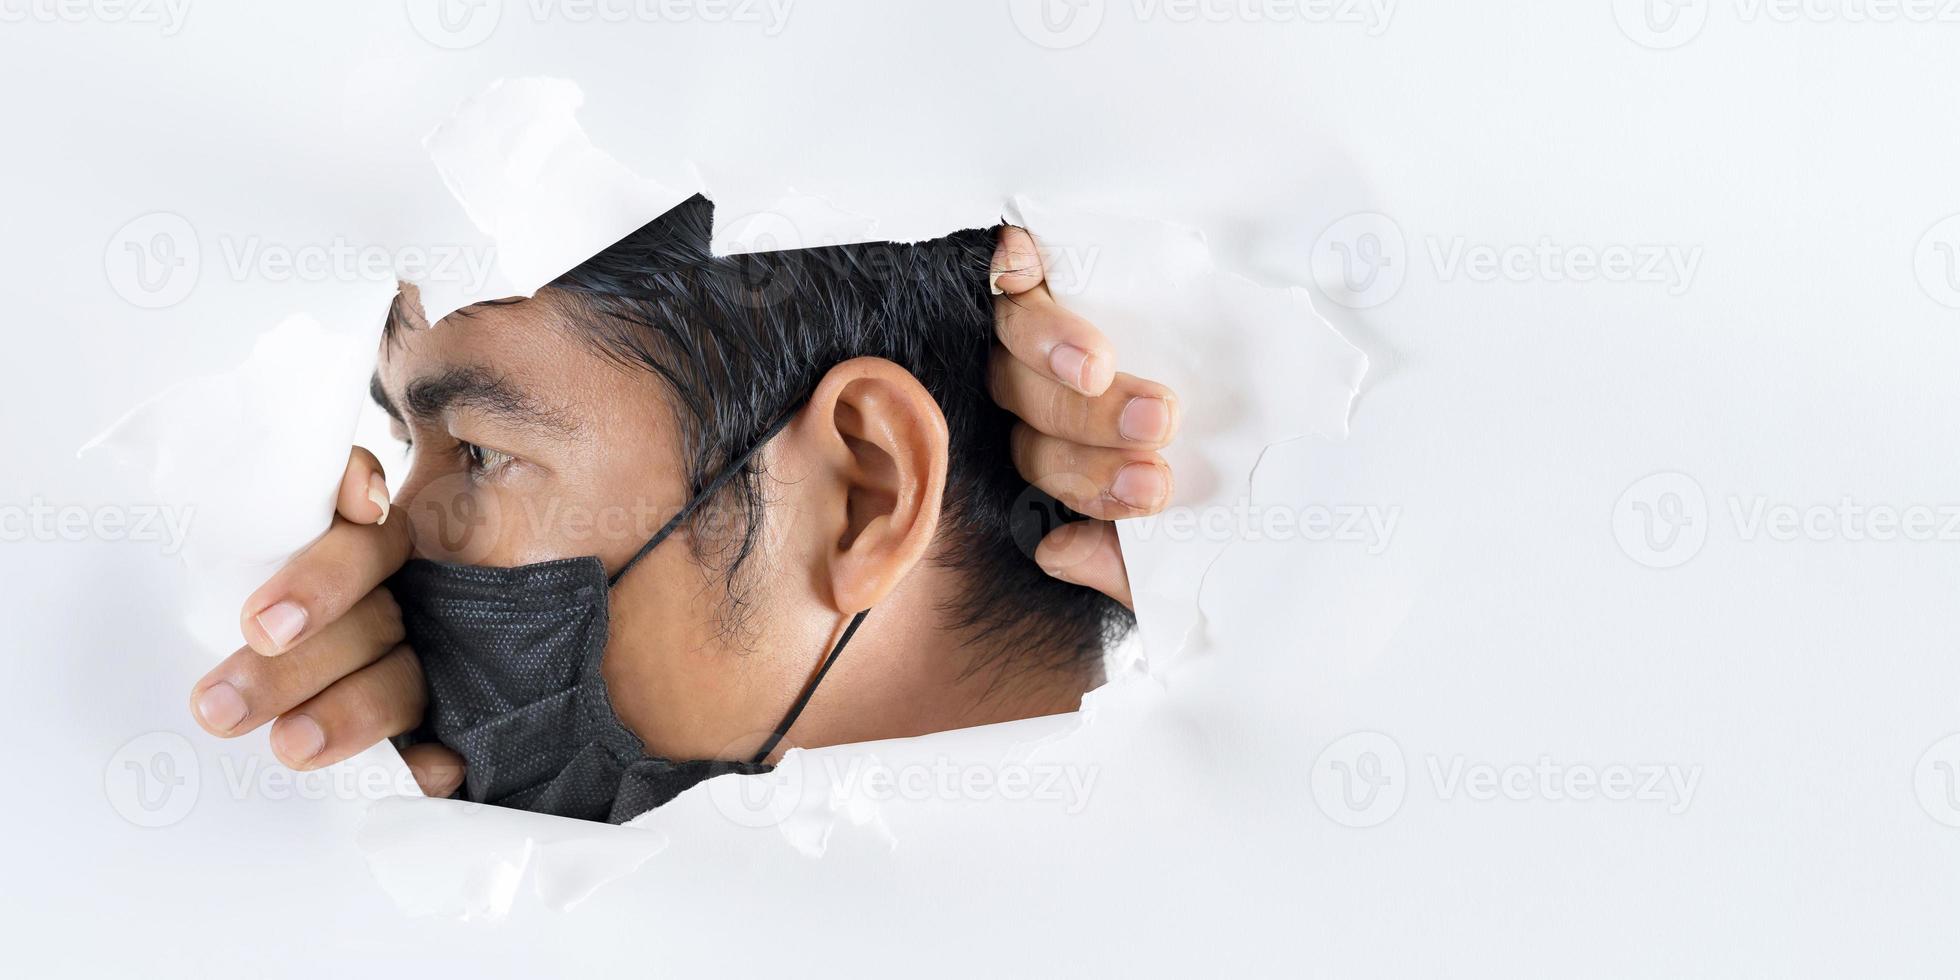 fechar retrato de homem usando máscara de proteção contra coronavírus foto